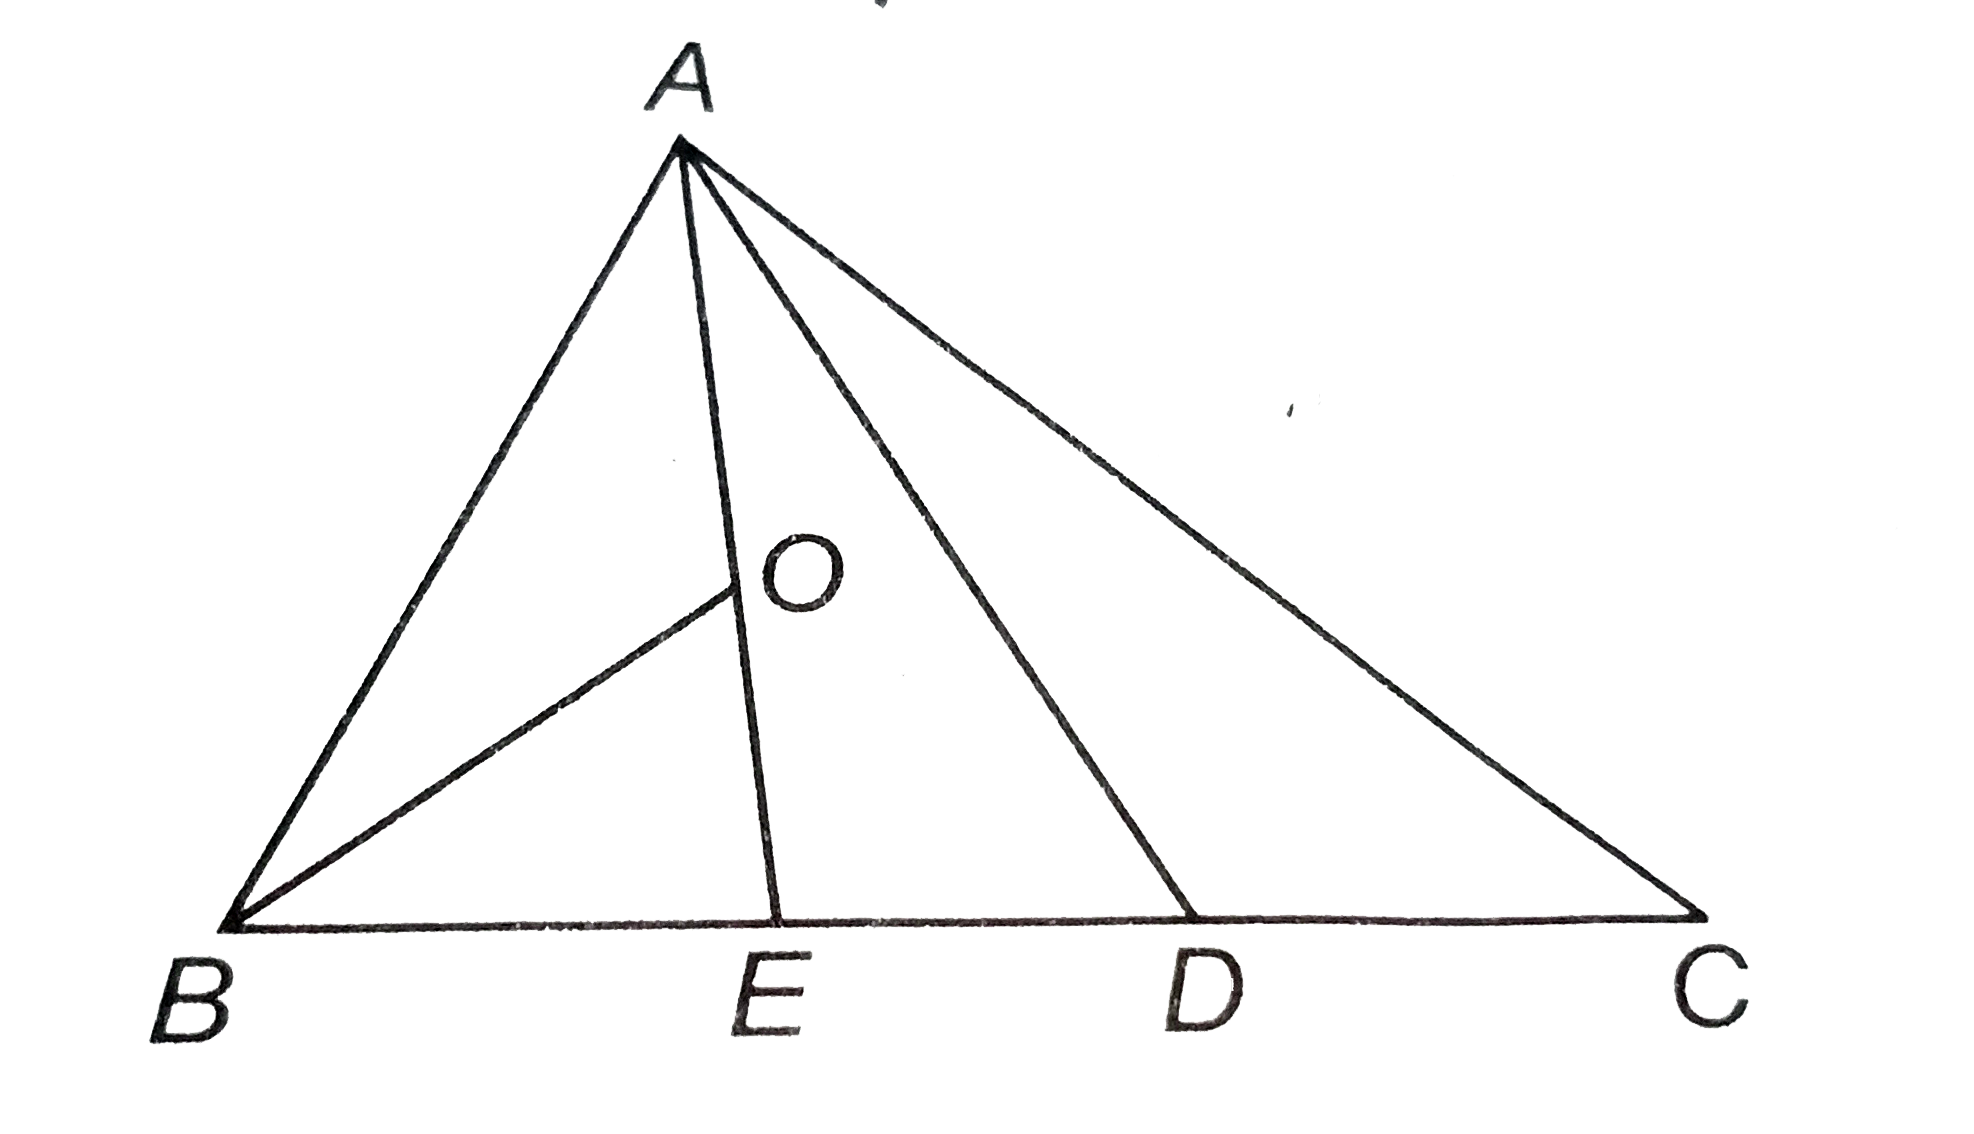 दिये चित्र में, D, BC का मध्य-बिन्दु, E, BD का मध्य-बिन्दु और O, AE का मध्य-बिन्दु है। DeltaBOE और DeltaABC के क्षेत्रफलों का अनुपात ज्ञात कीजिए।